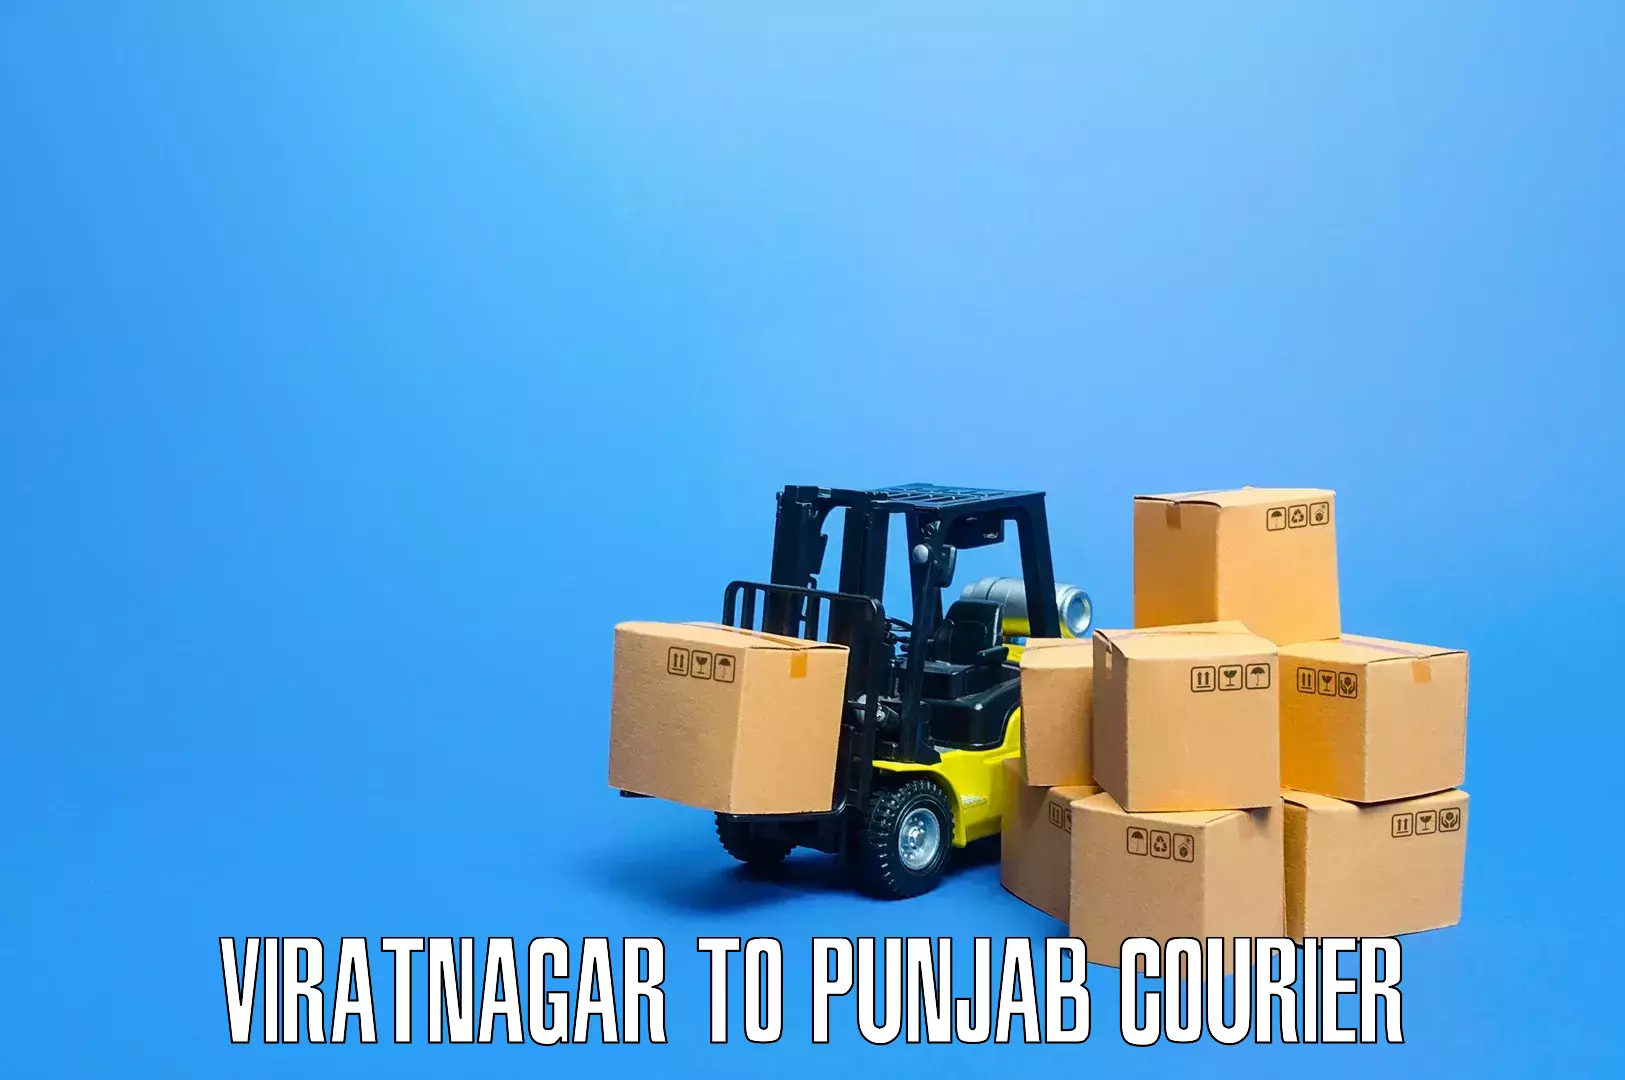 Furniture transport service Viratnagar to Punjab